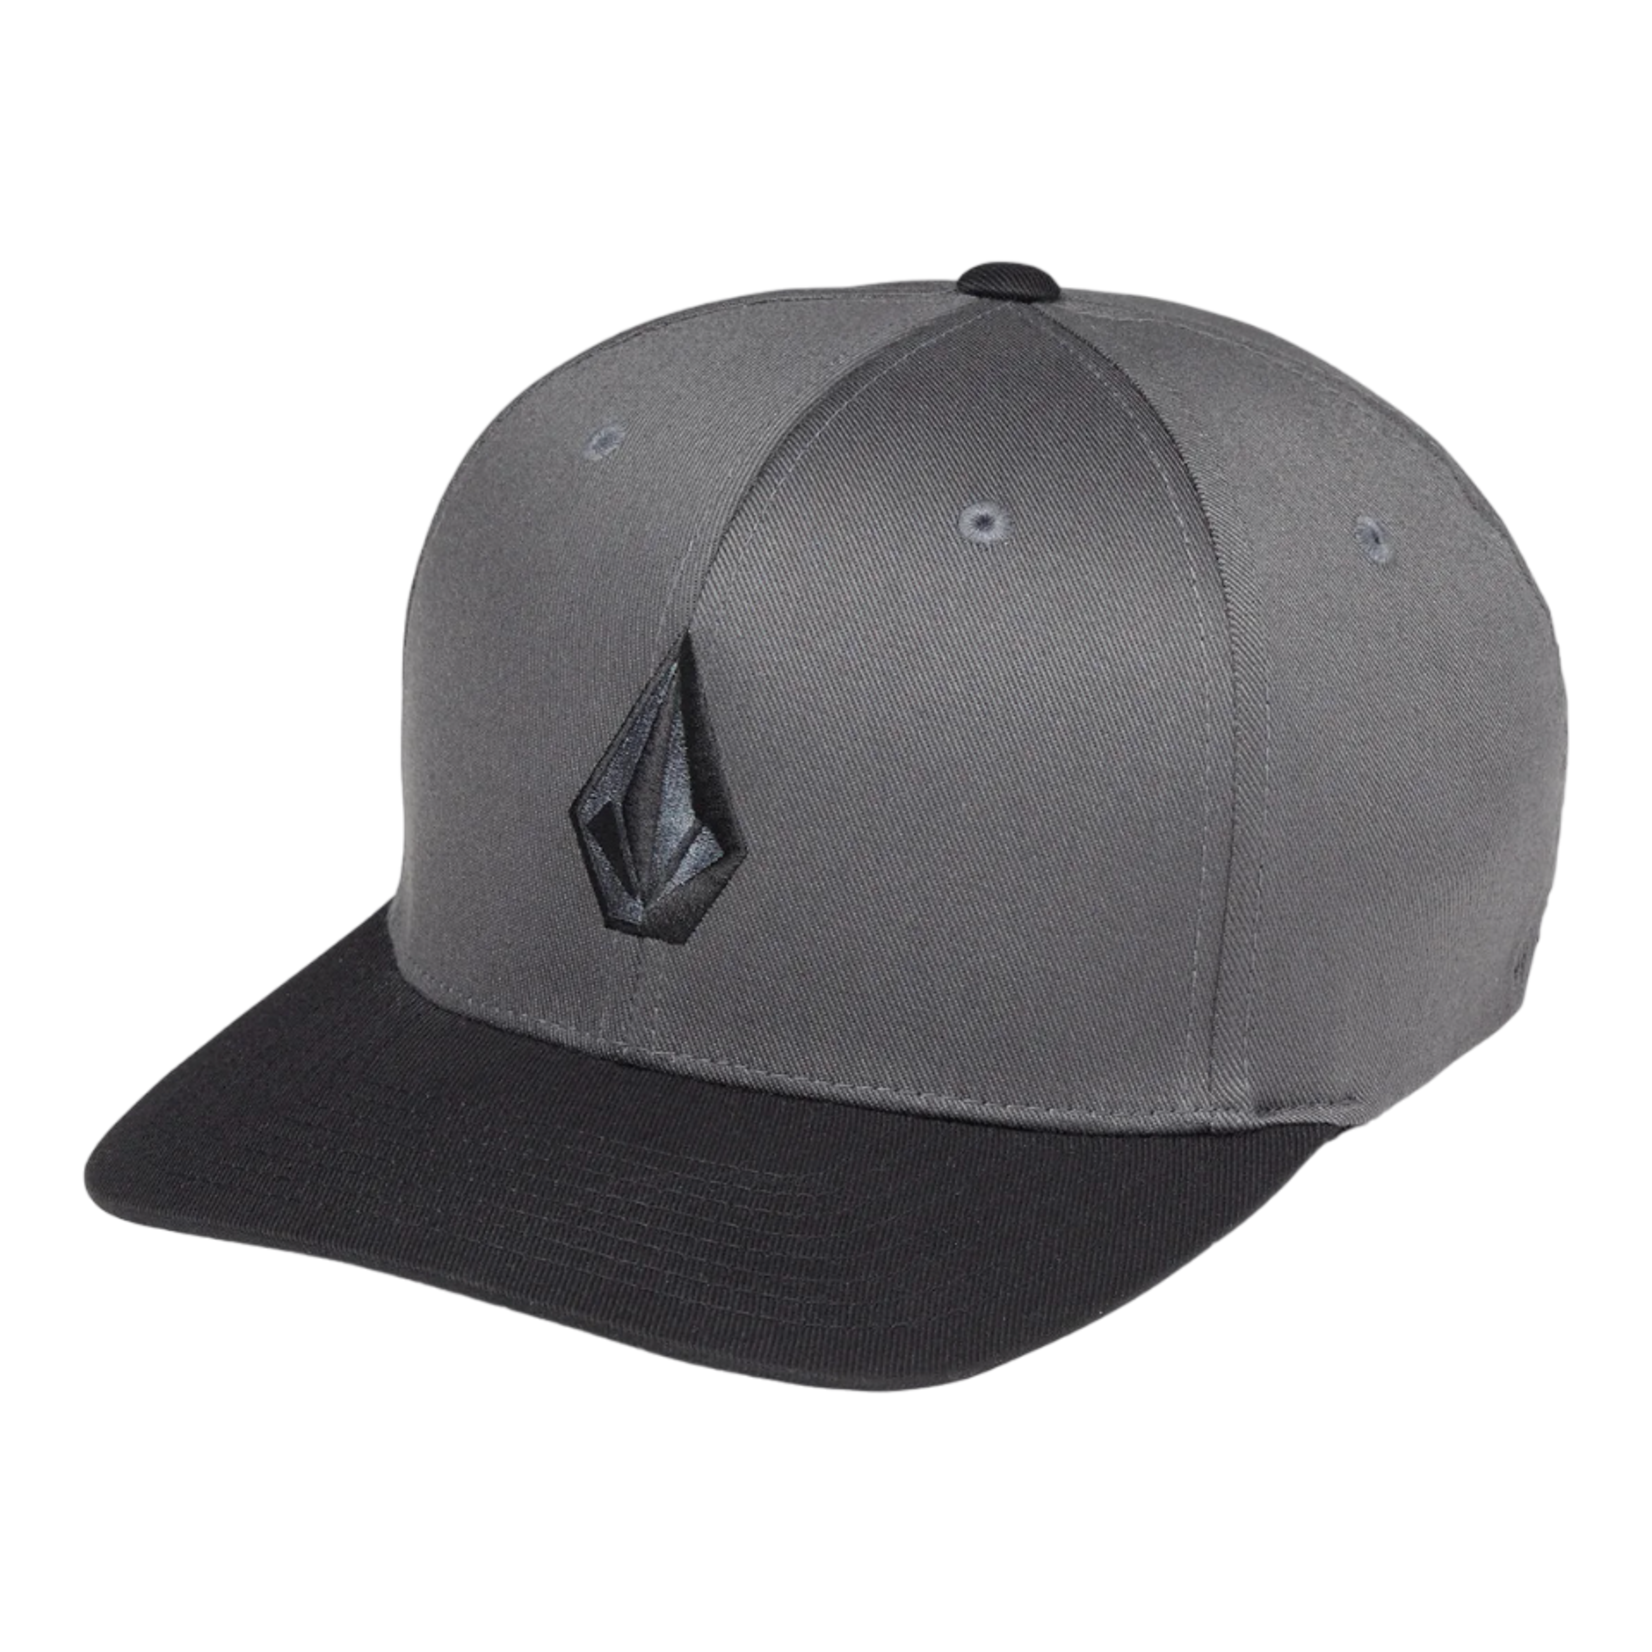 Volcom Volcom Full Stone Flex Fit Hat - Asphalt Black - Small/Medium